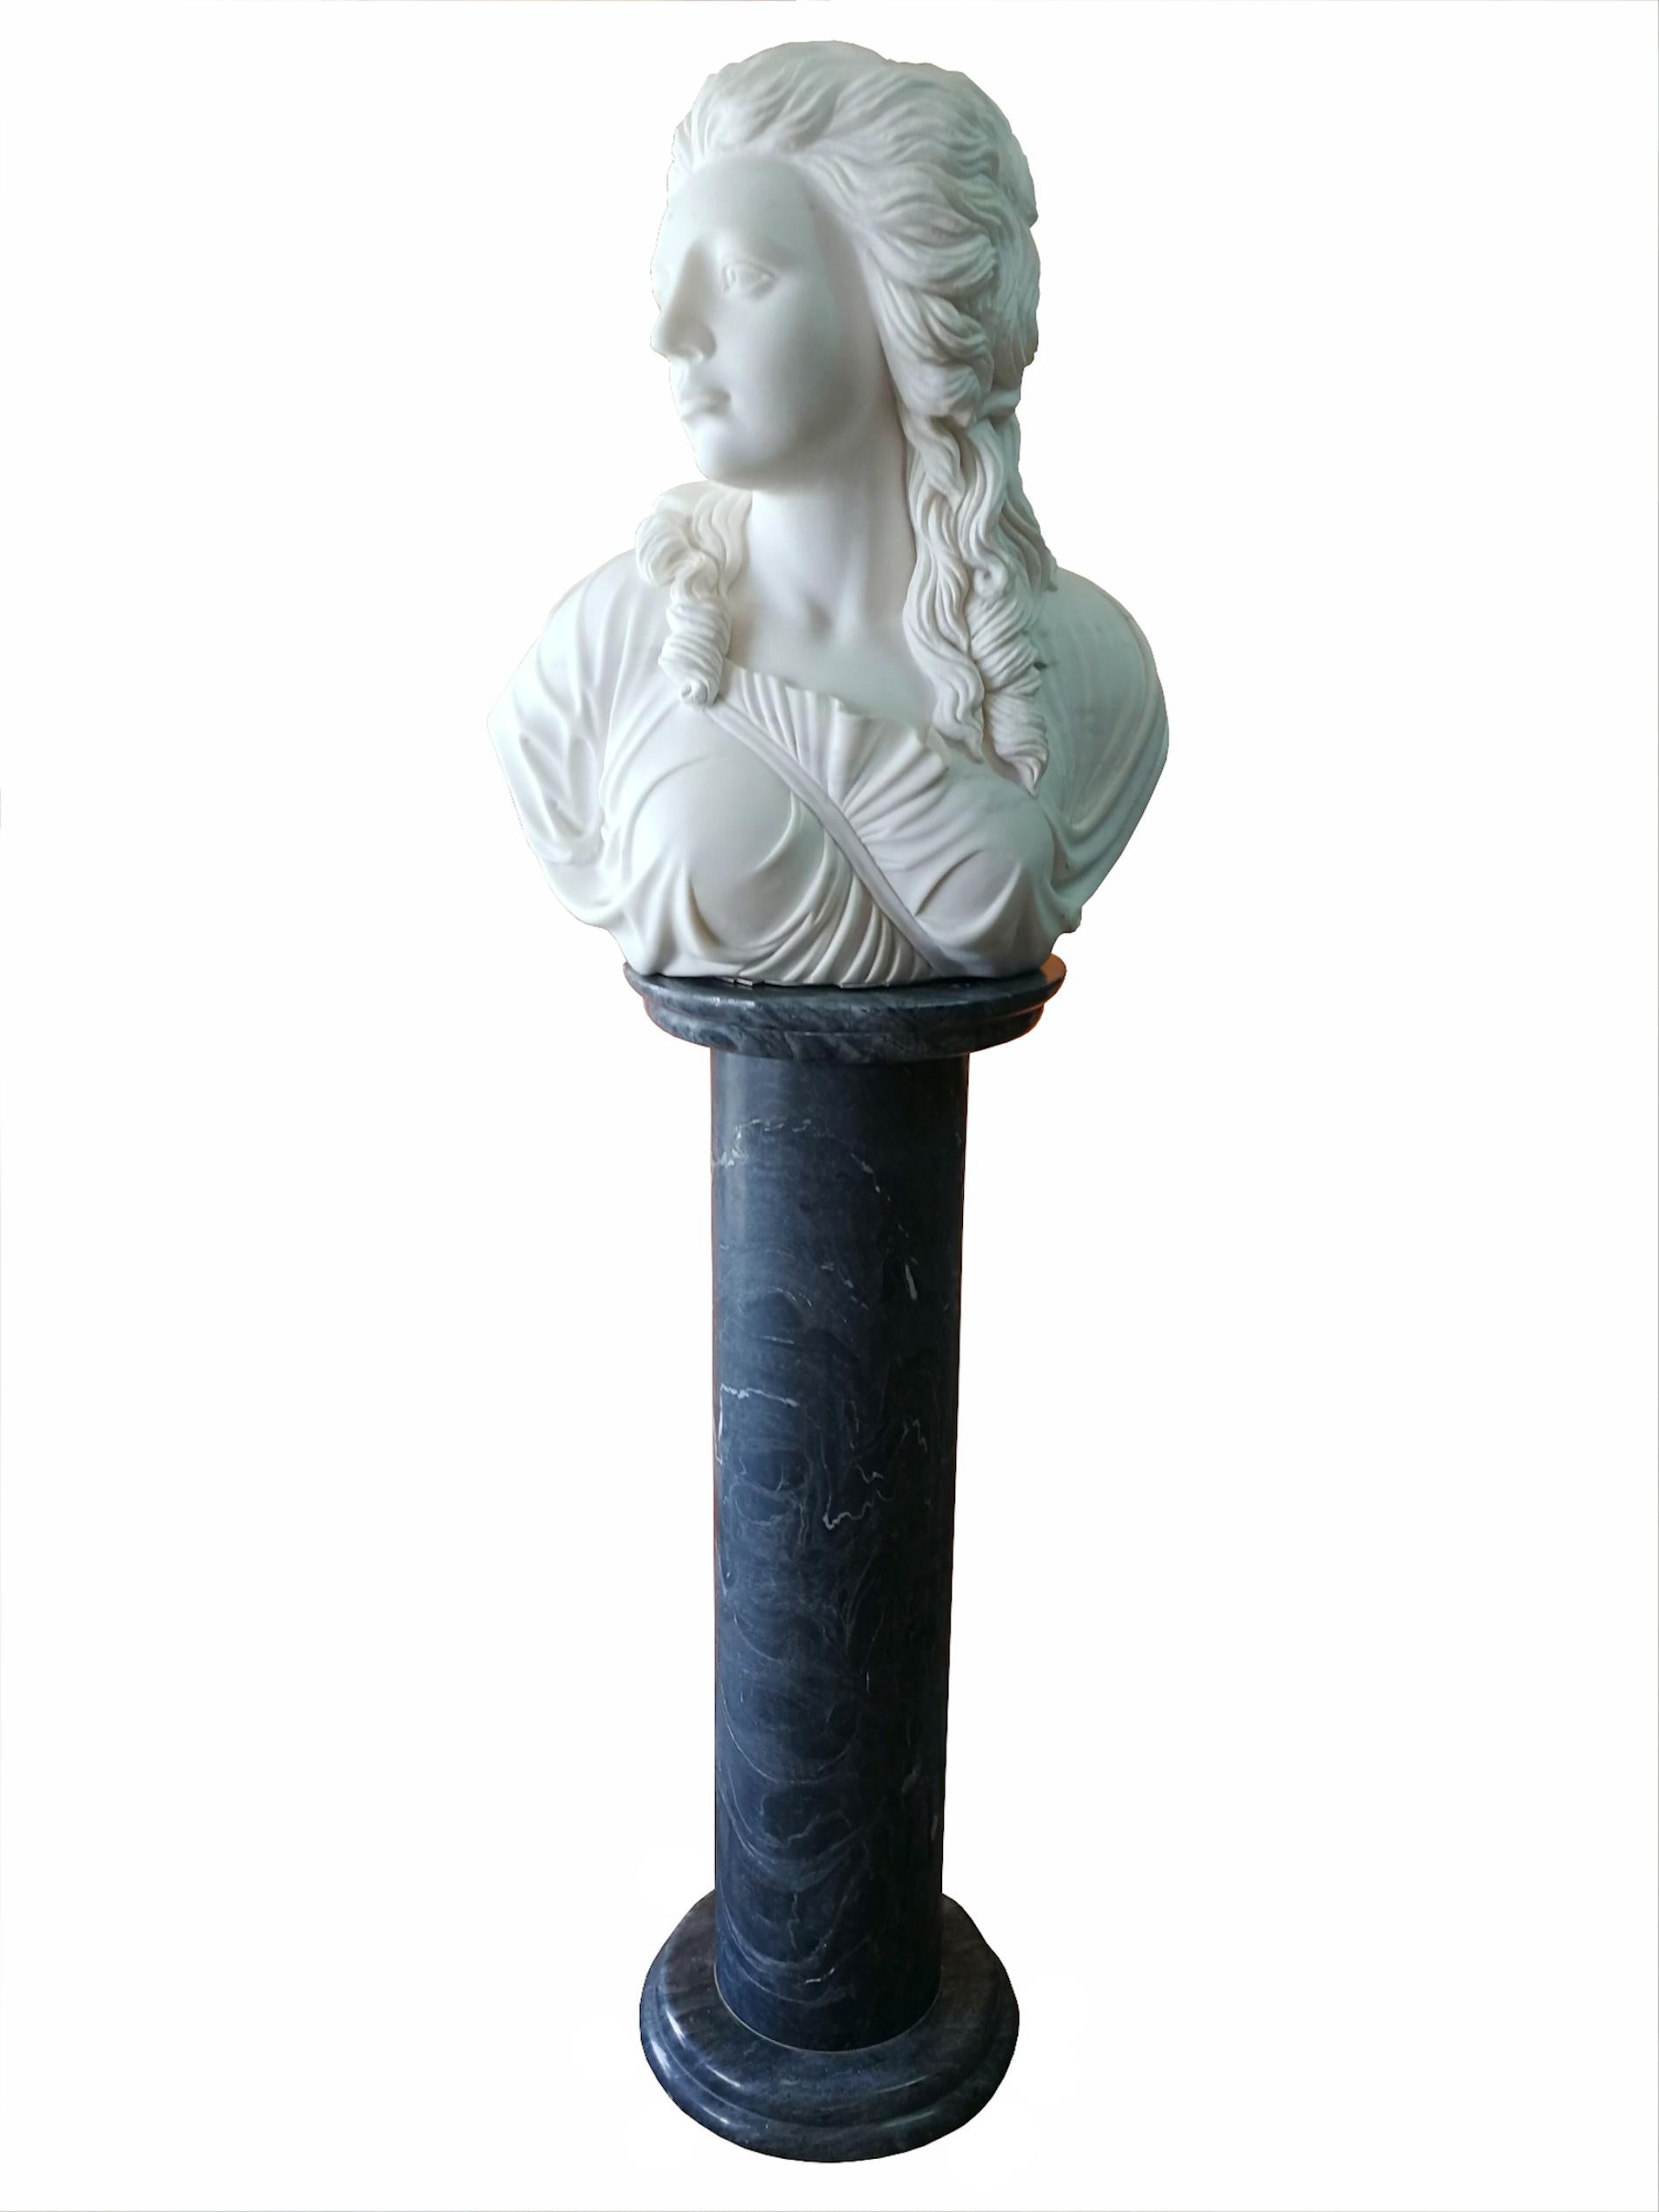 Magnifique buste en marbre blanc de Macael sculpté à la main représentant une jeune fille, de taille réelle. Artiste inconnu. Le piédestal en marbre n'est pas inclus dans le prix.
Origine : Espagne
Période : fin du XXe siècle, années 90.